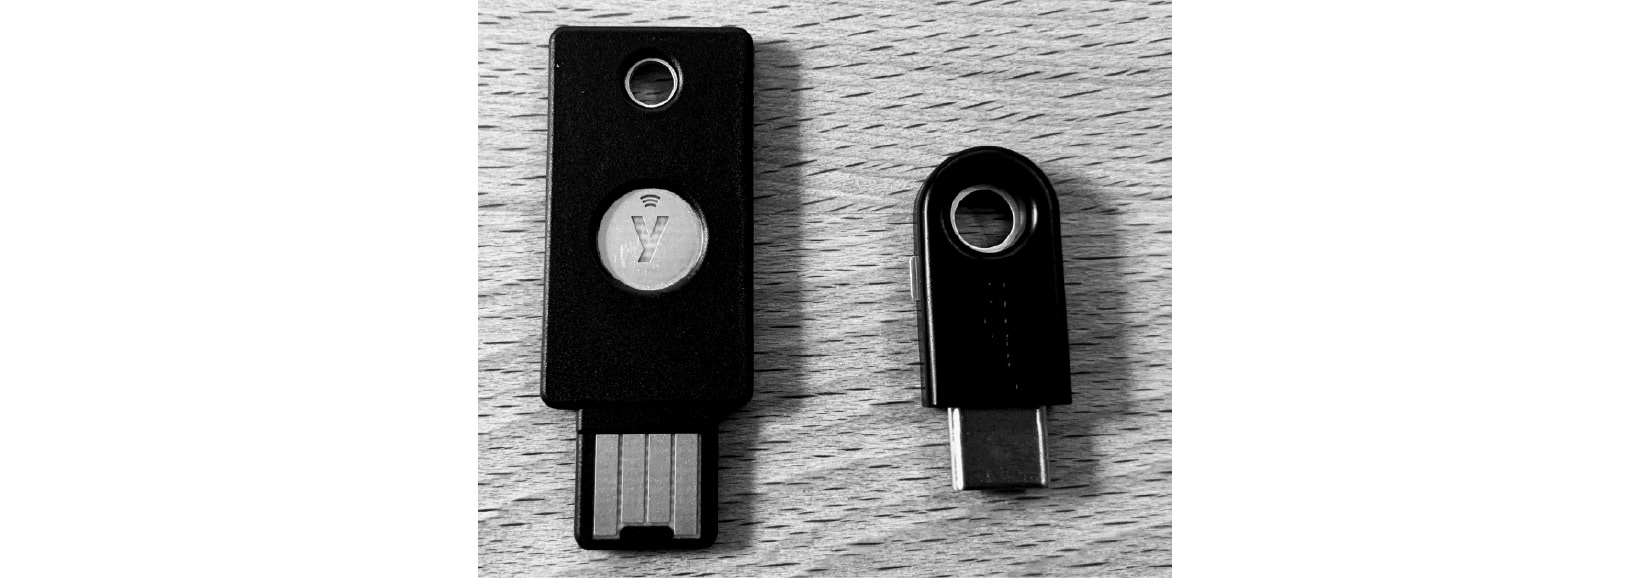 Figure. 3.44 - FIDO2 security keys
